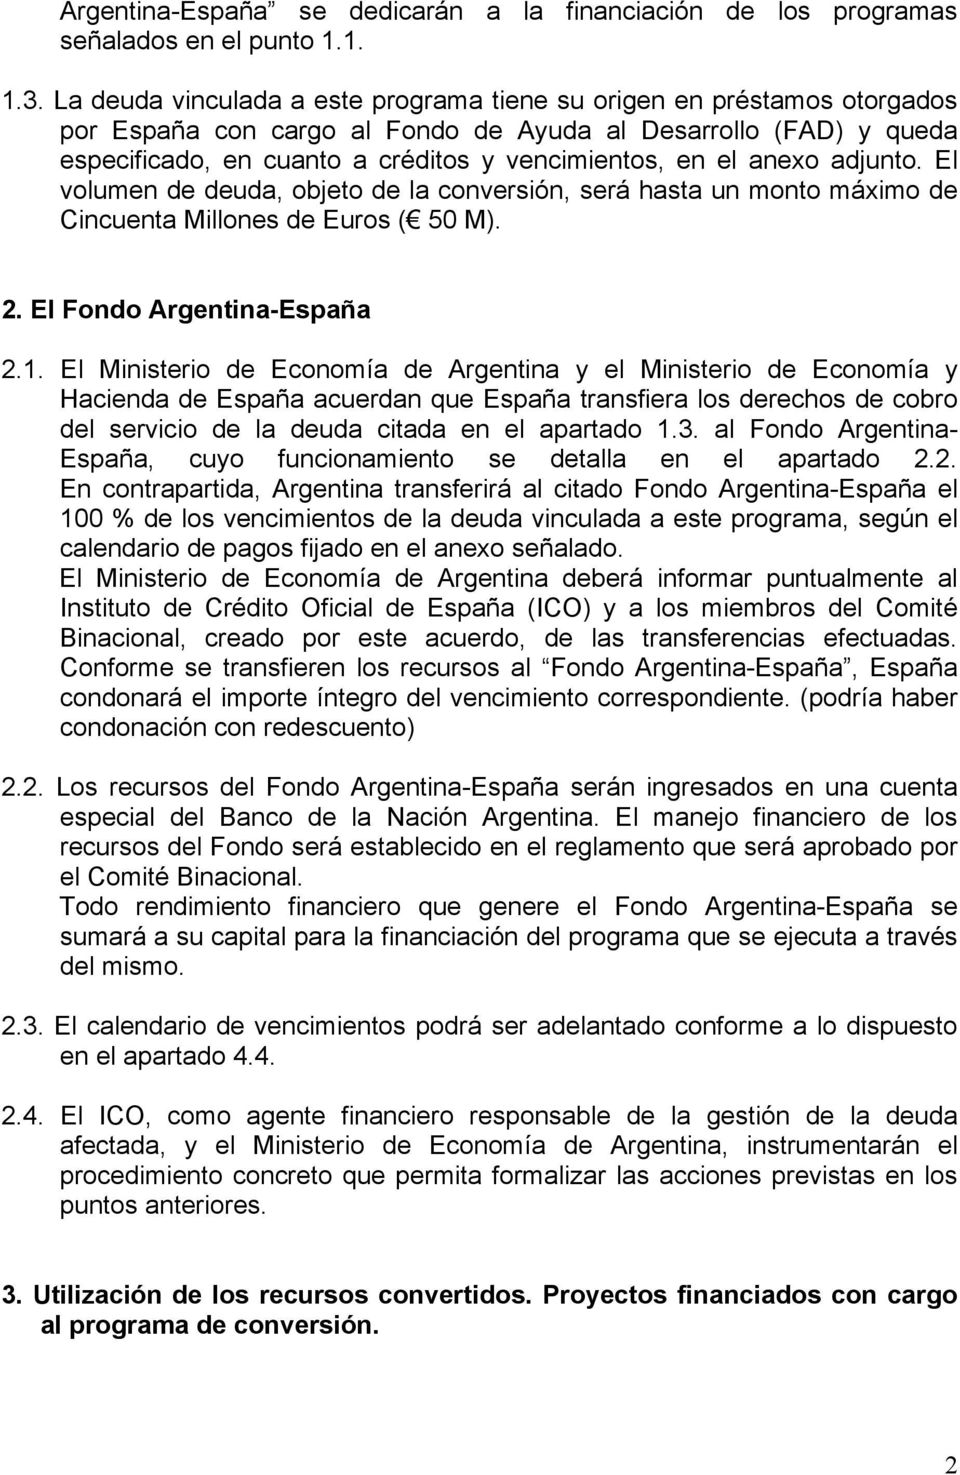 anexo adjunto. El volumen de deuda, objeto de la conversión, será hasta un monto máximo de Cincuenta Millones de Euros ( 50 M). 2. El Fondo Argentina-España 2.1.